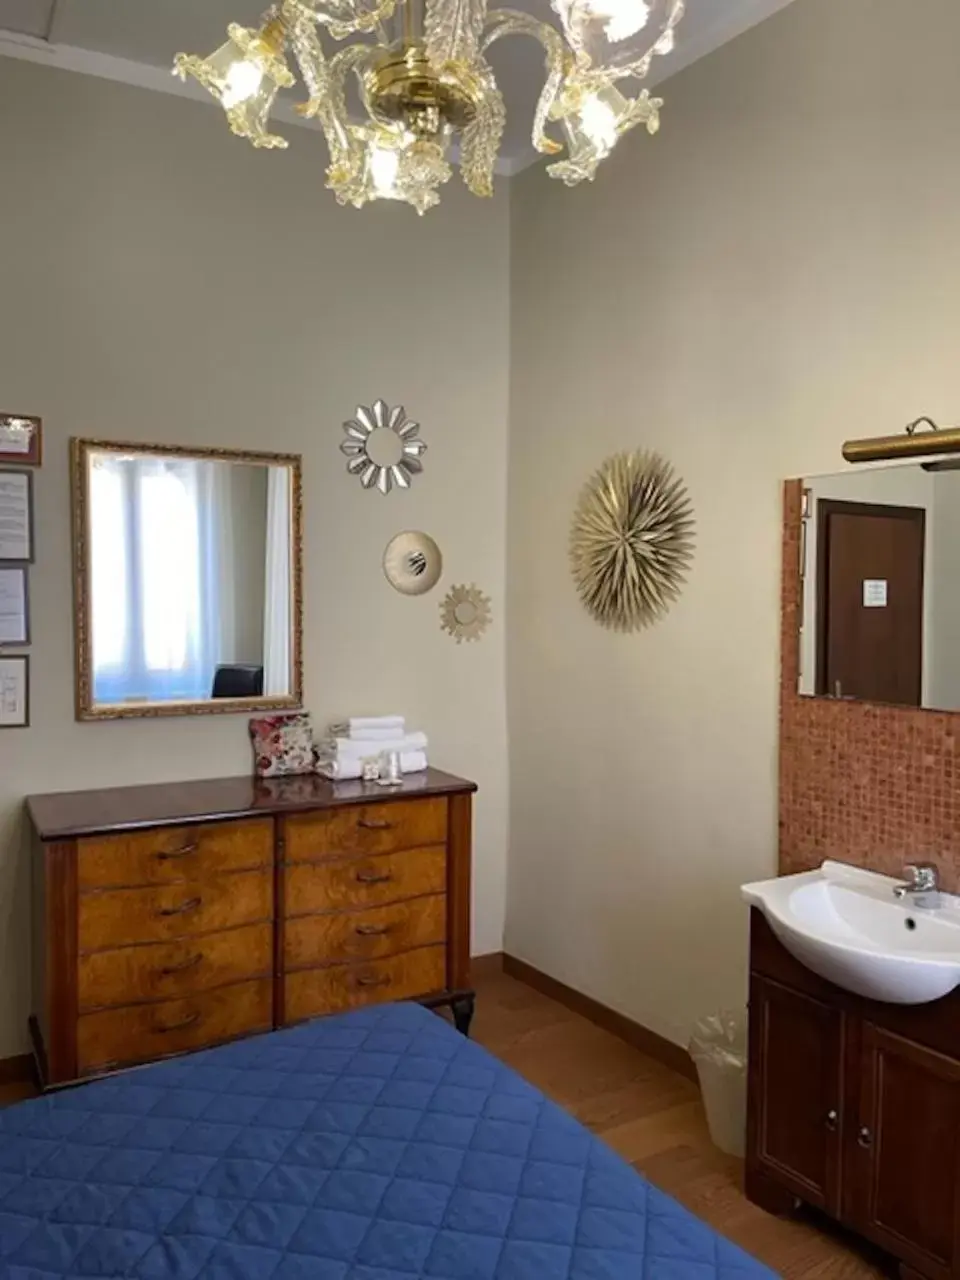 Decorative detail, Bathroom in Pensione Guerrato